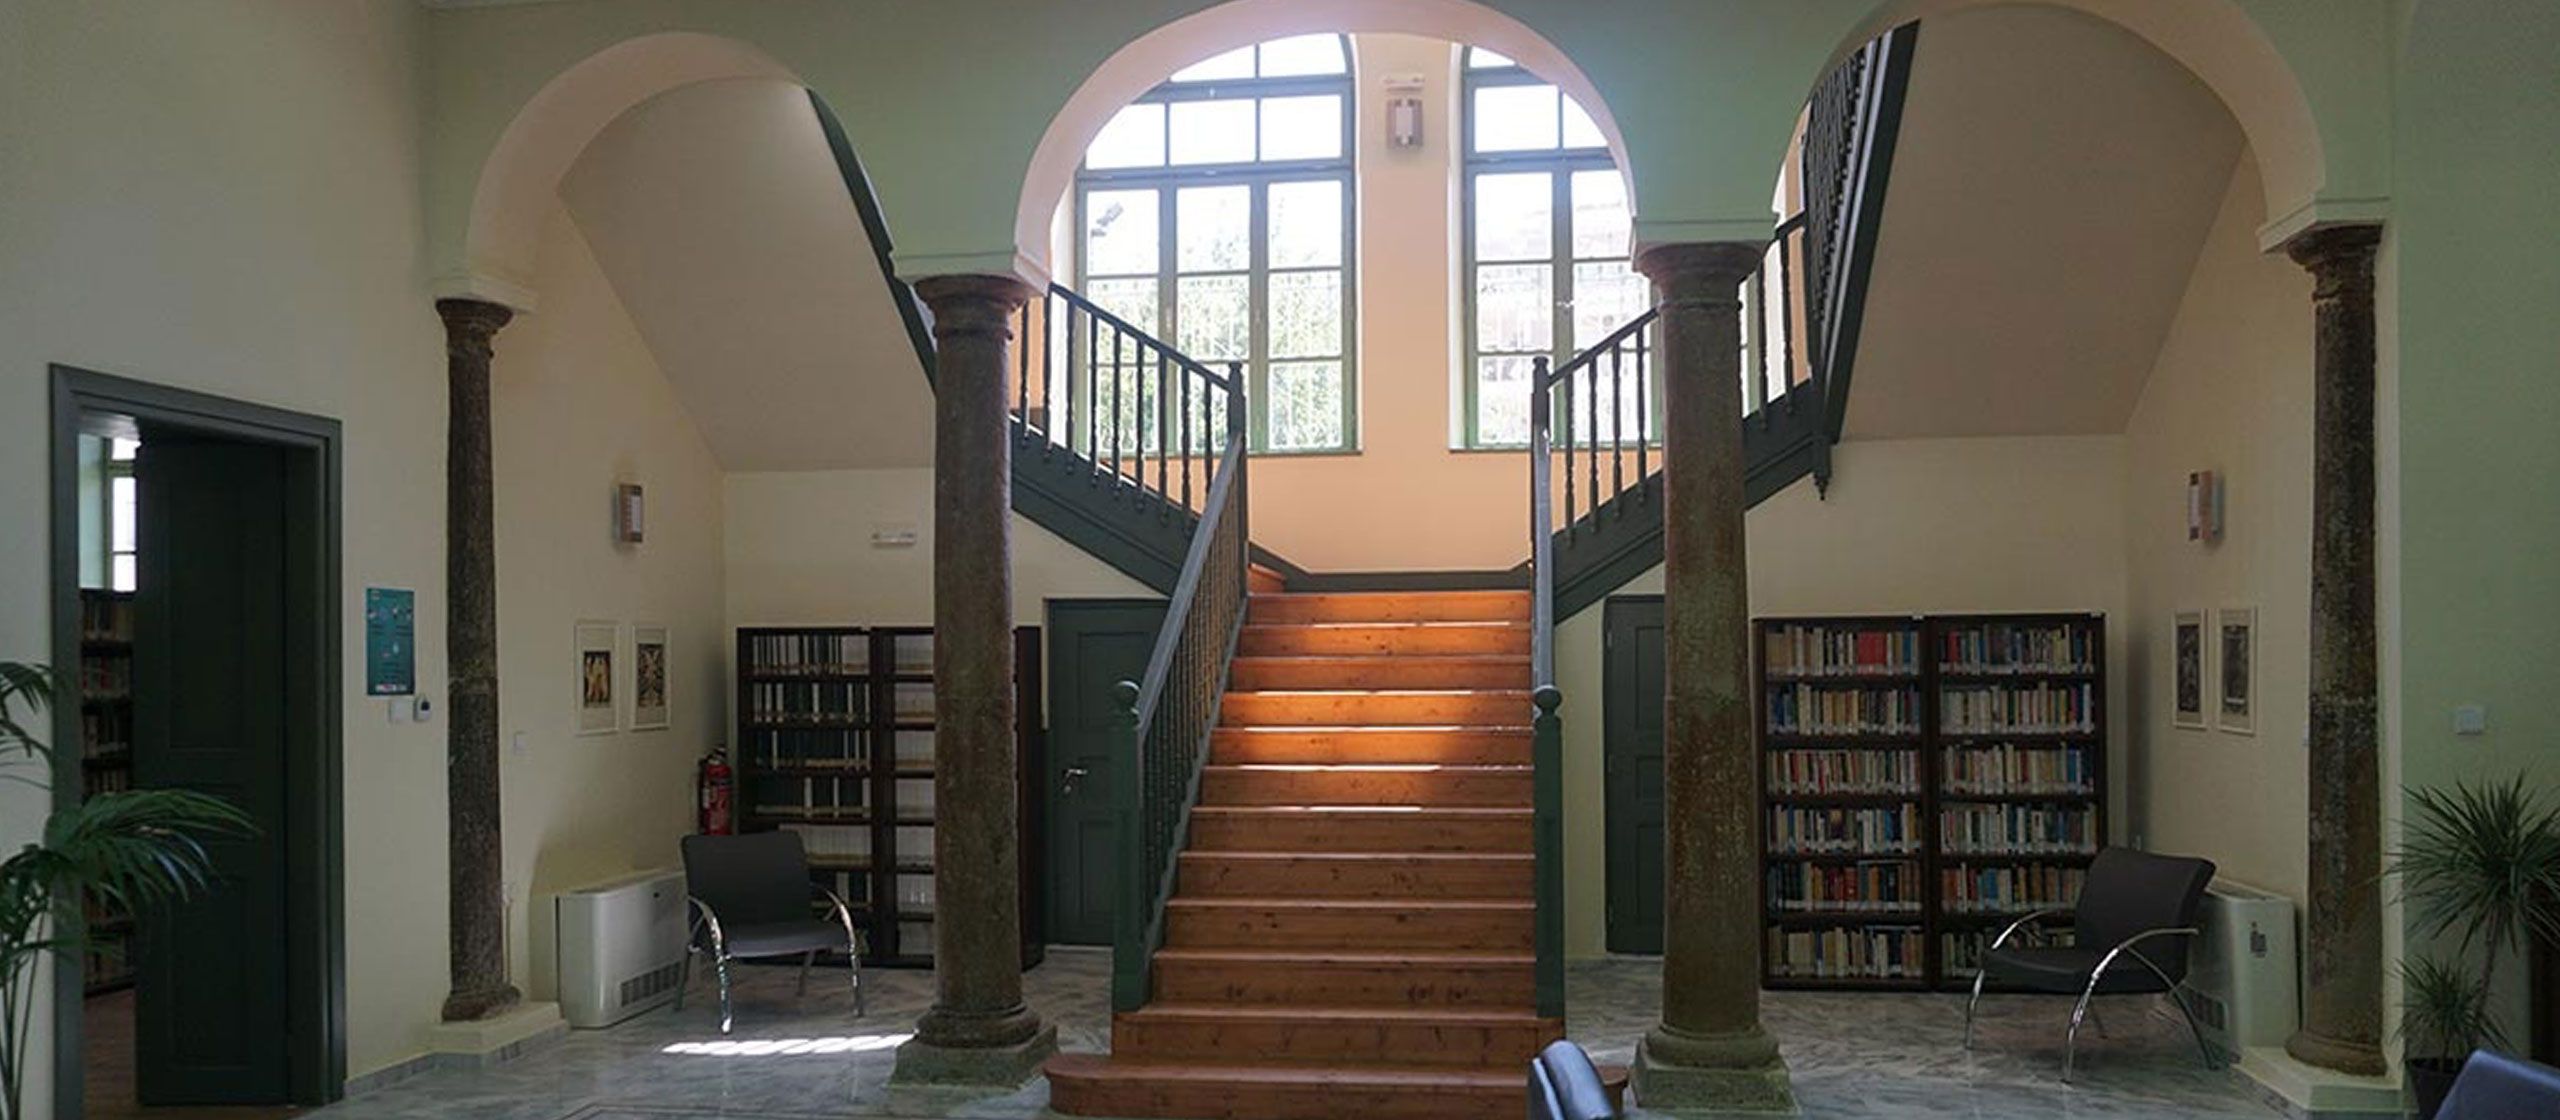 Municipal Library of Komotini